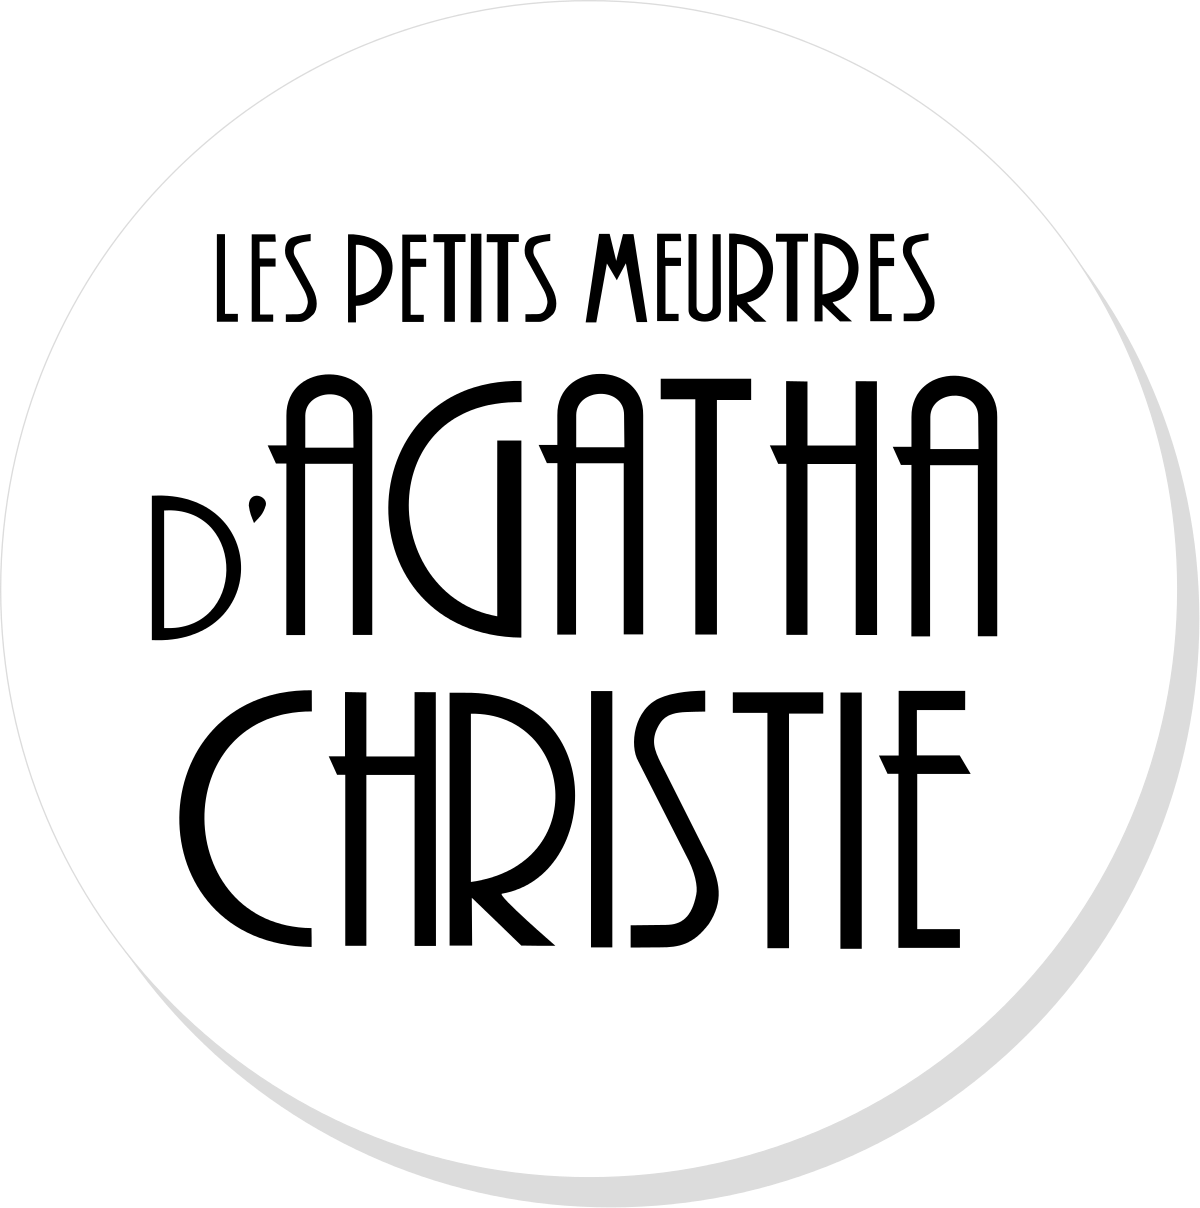 Les Petits meurtres d'Agatha Christie sur Youtube